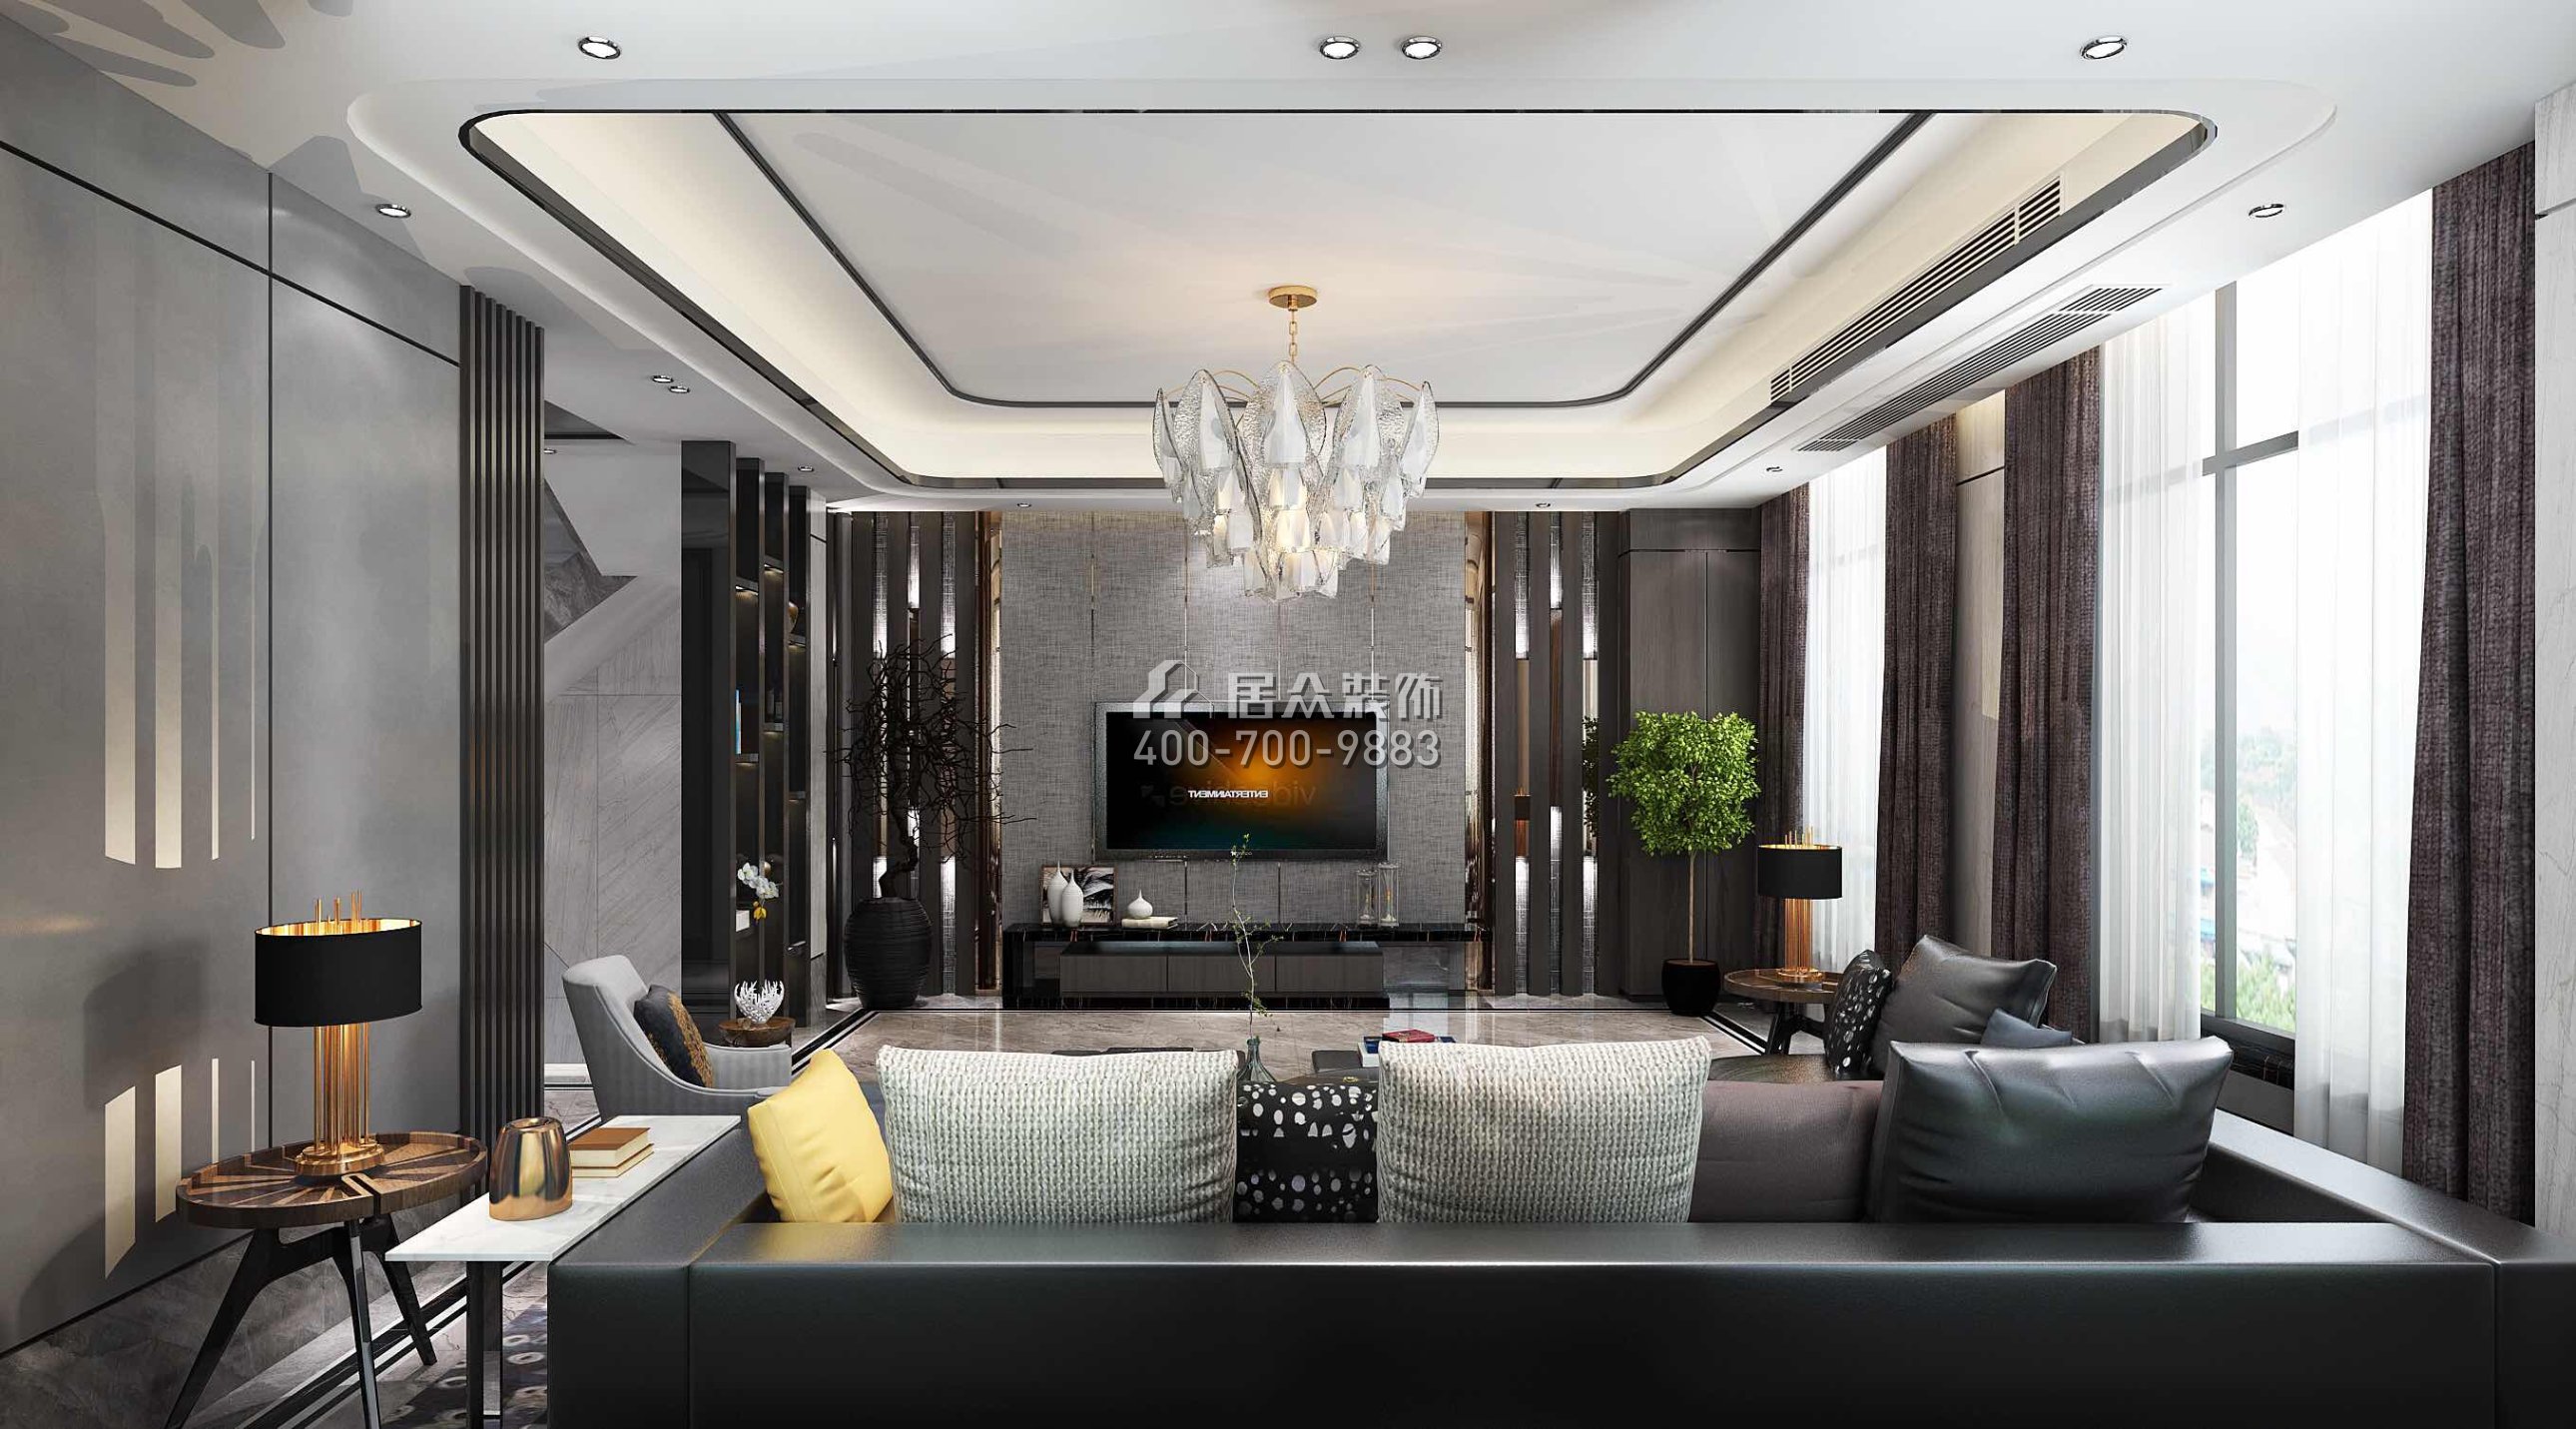 龙光水悦龙湾500平方米现代简约风格别墅户型客厅装修效果图